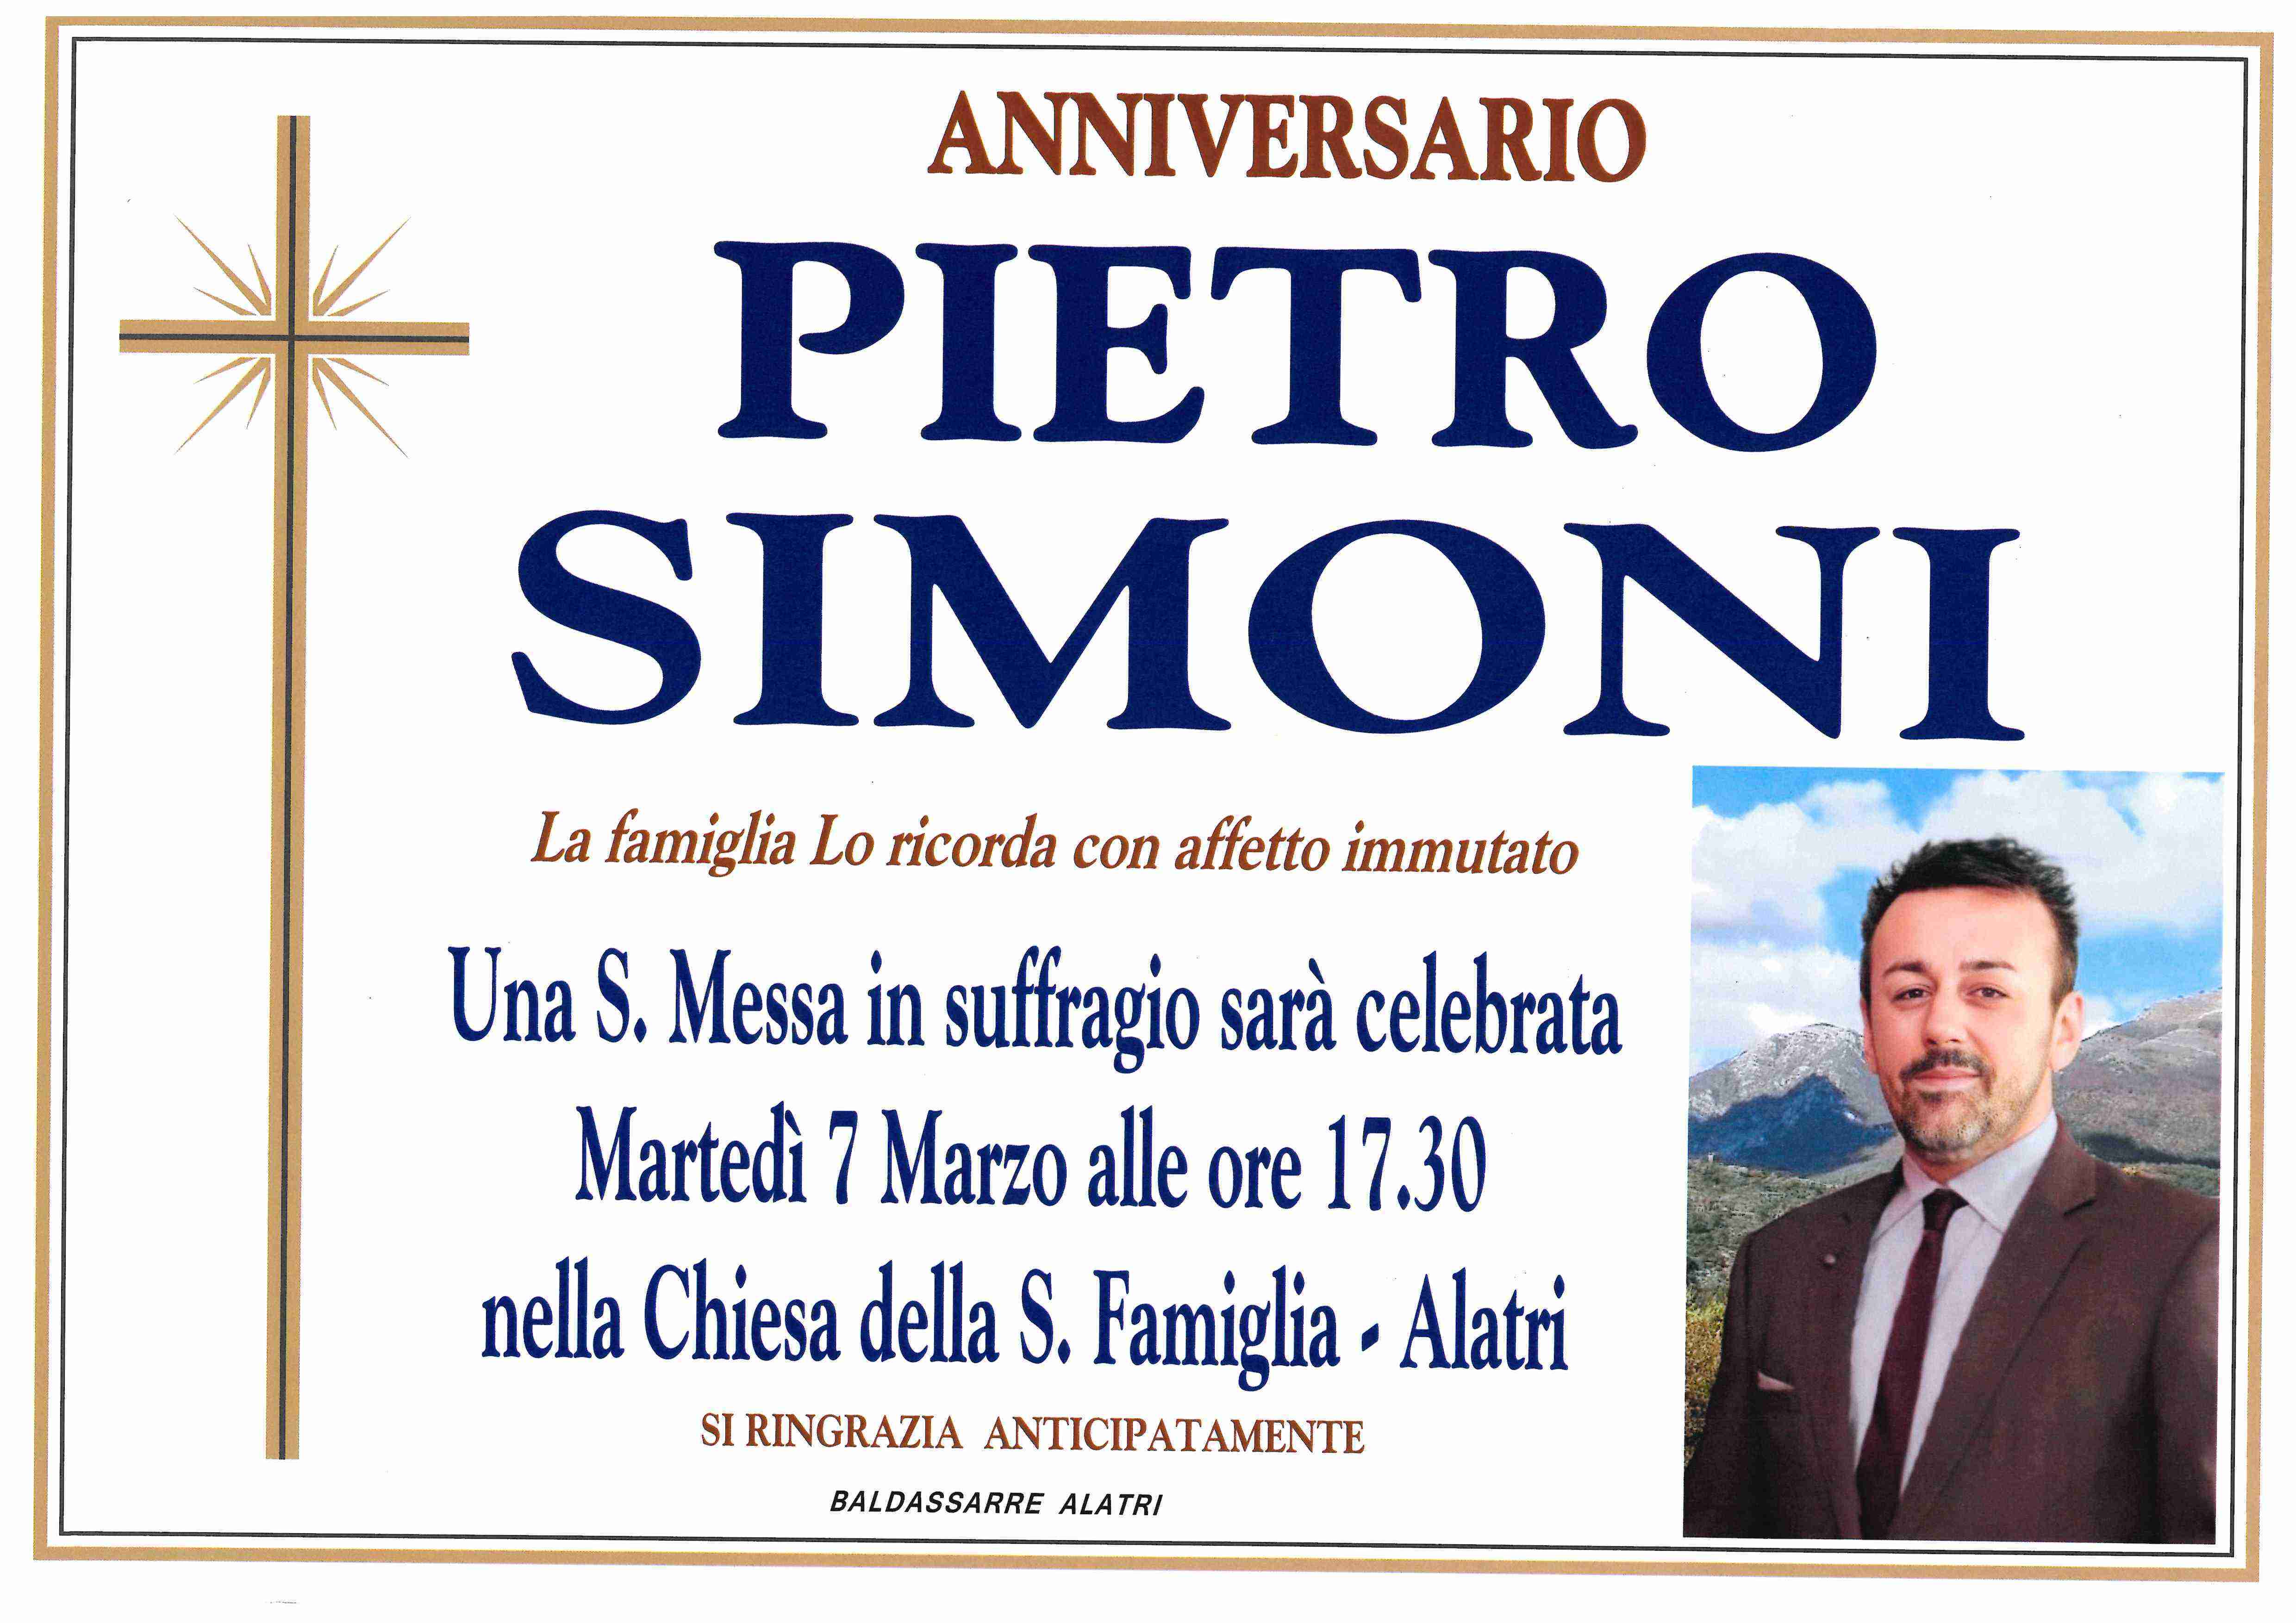 Pietro Simoni